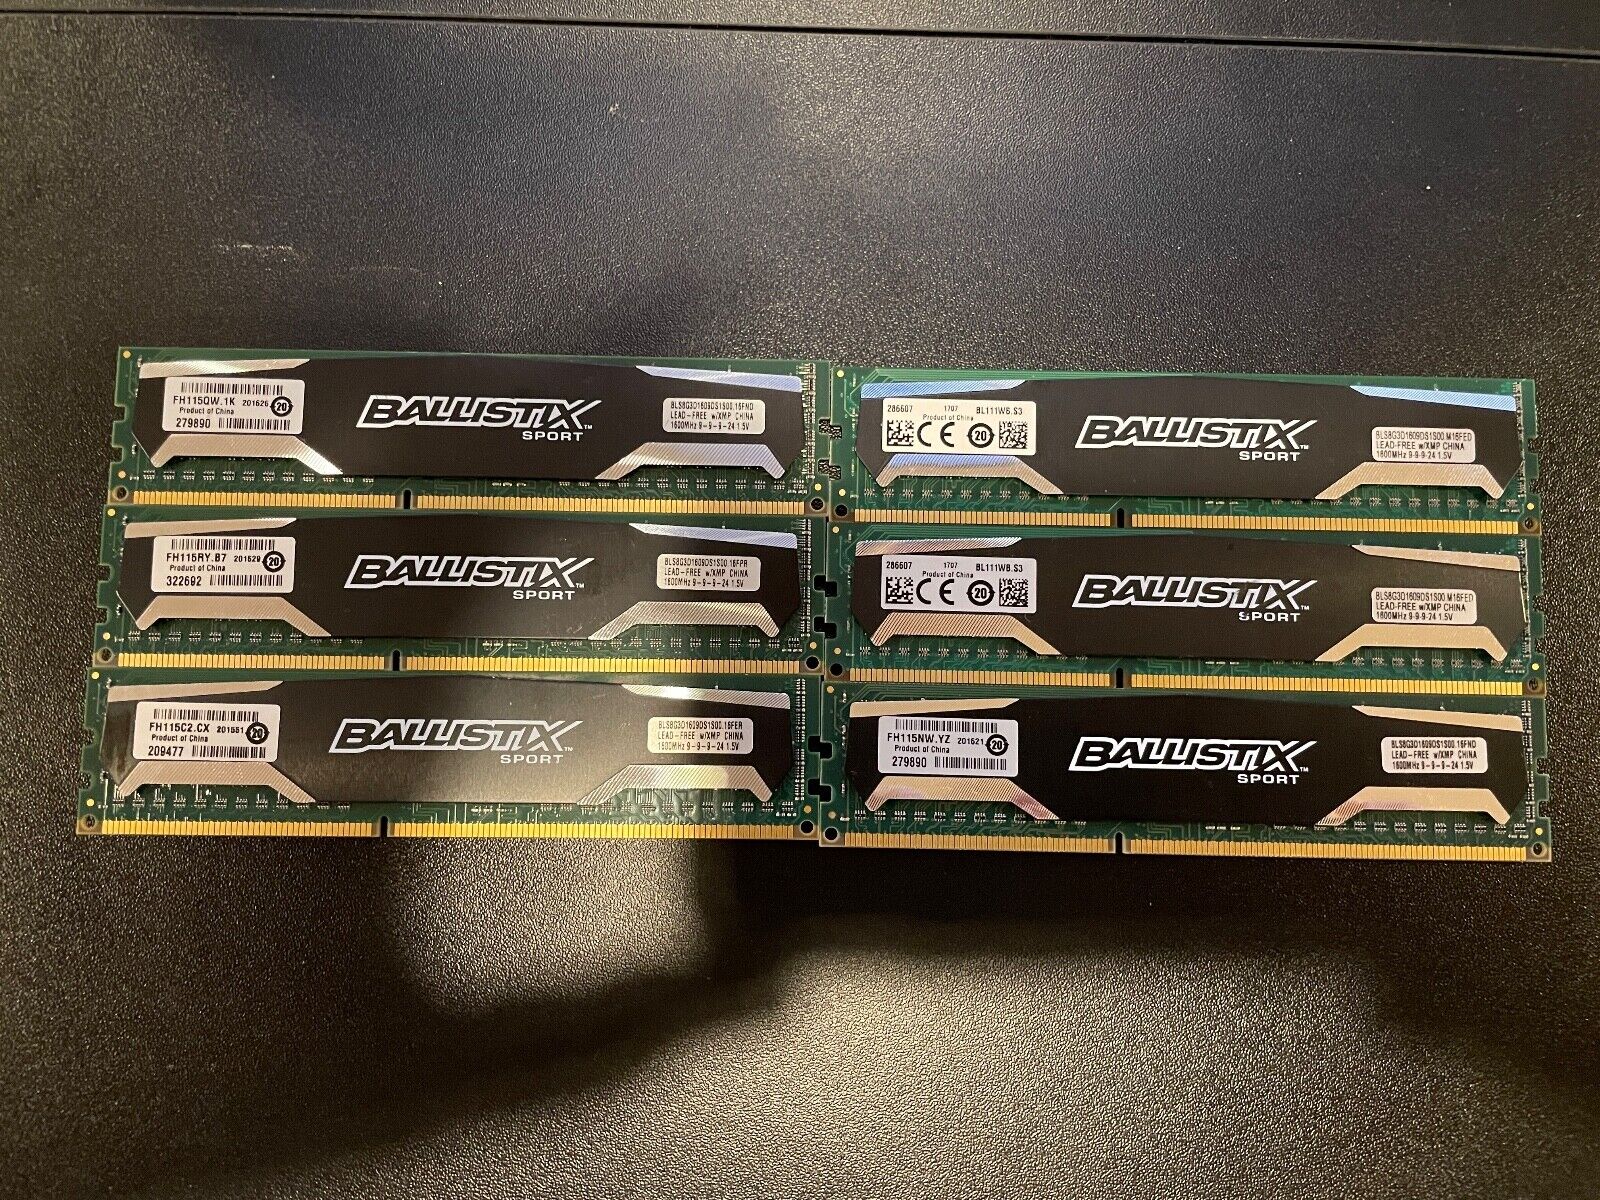 Crucial Ballistic DDR3 RAM Lot - 8GB x 6 - DIMM 1600 MHz SDRAM Memory